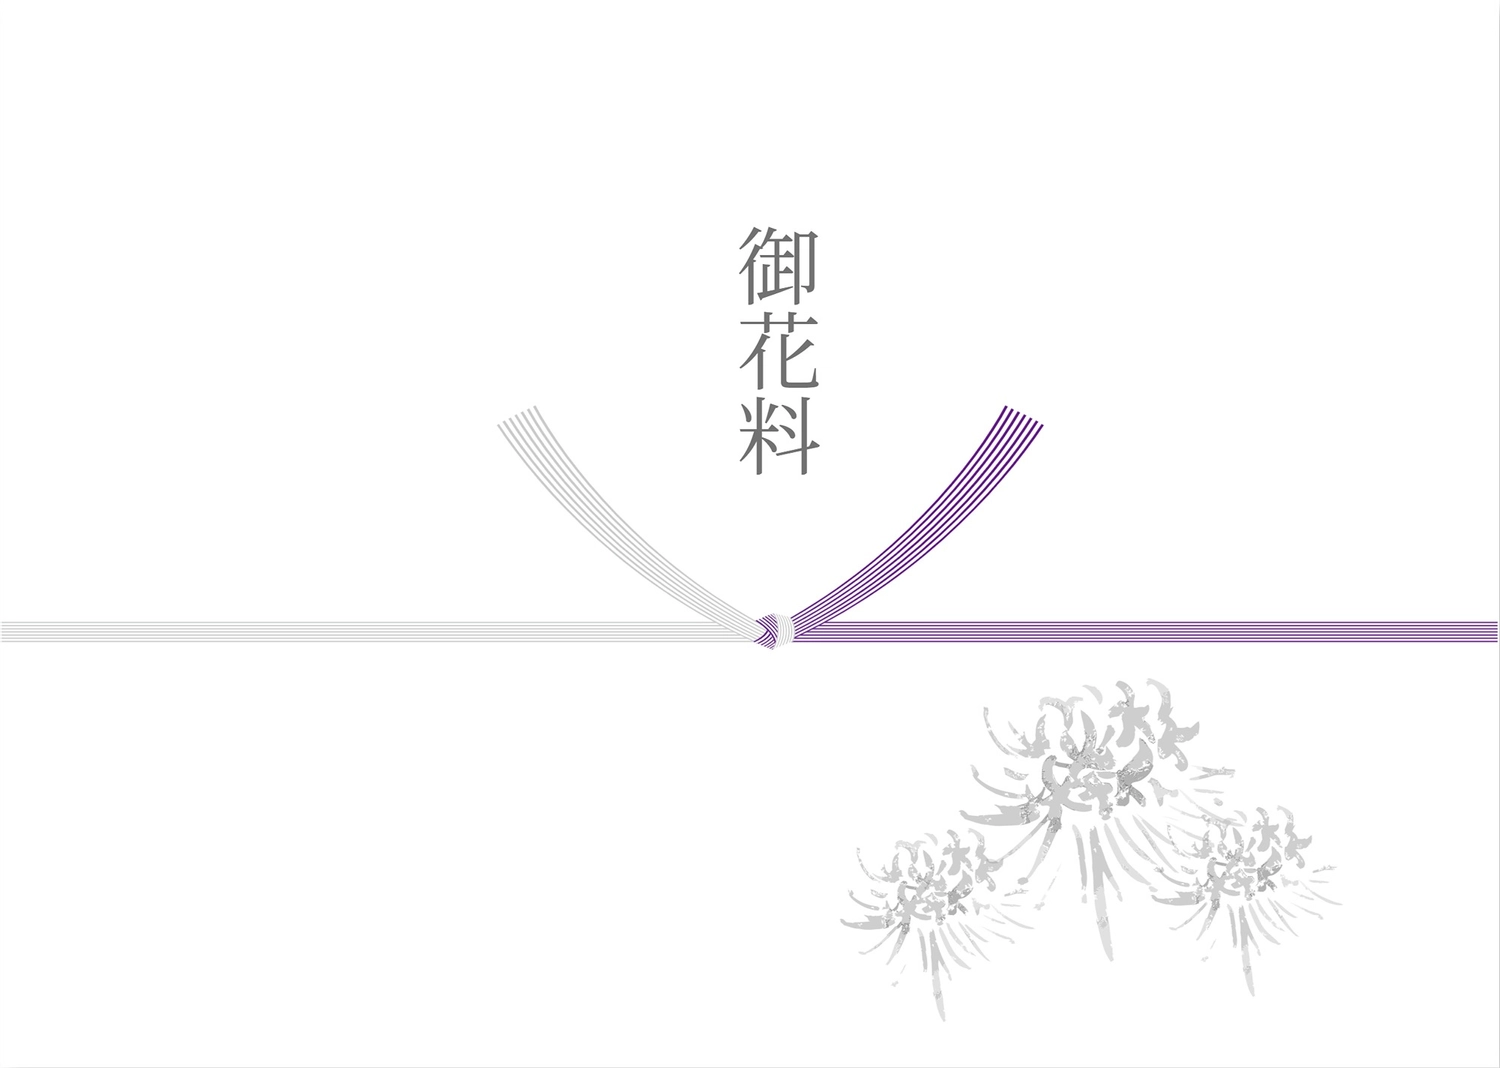 御花料, Packaging materials, Shinto ritual, watercolor style, Sales promotion tool template